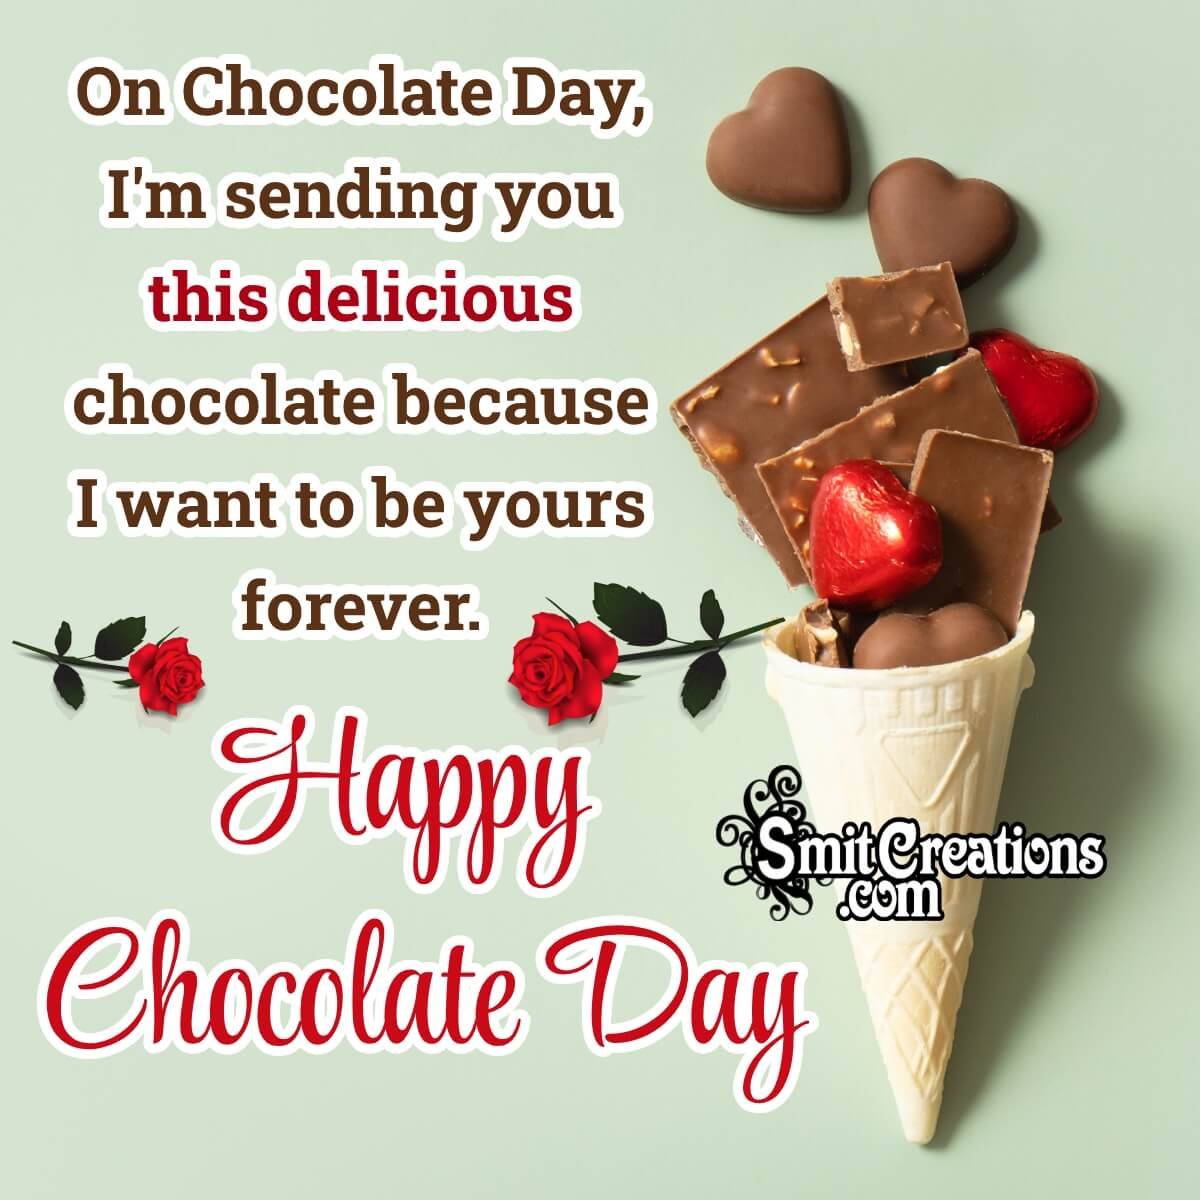 Happy Chocolate Day Wish